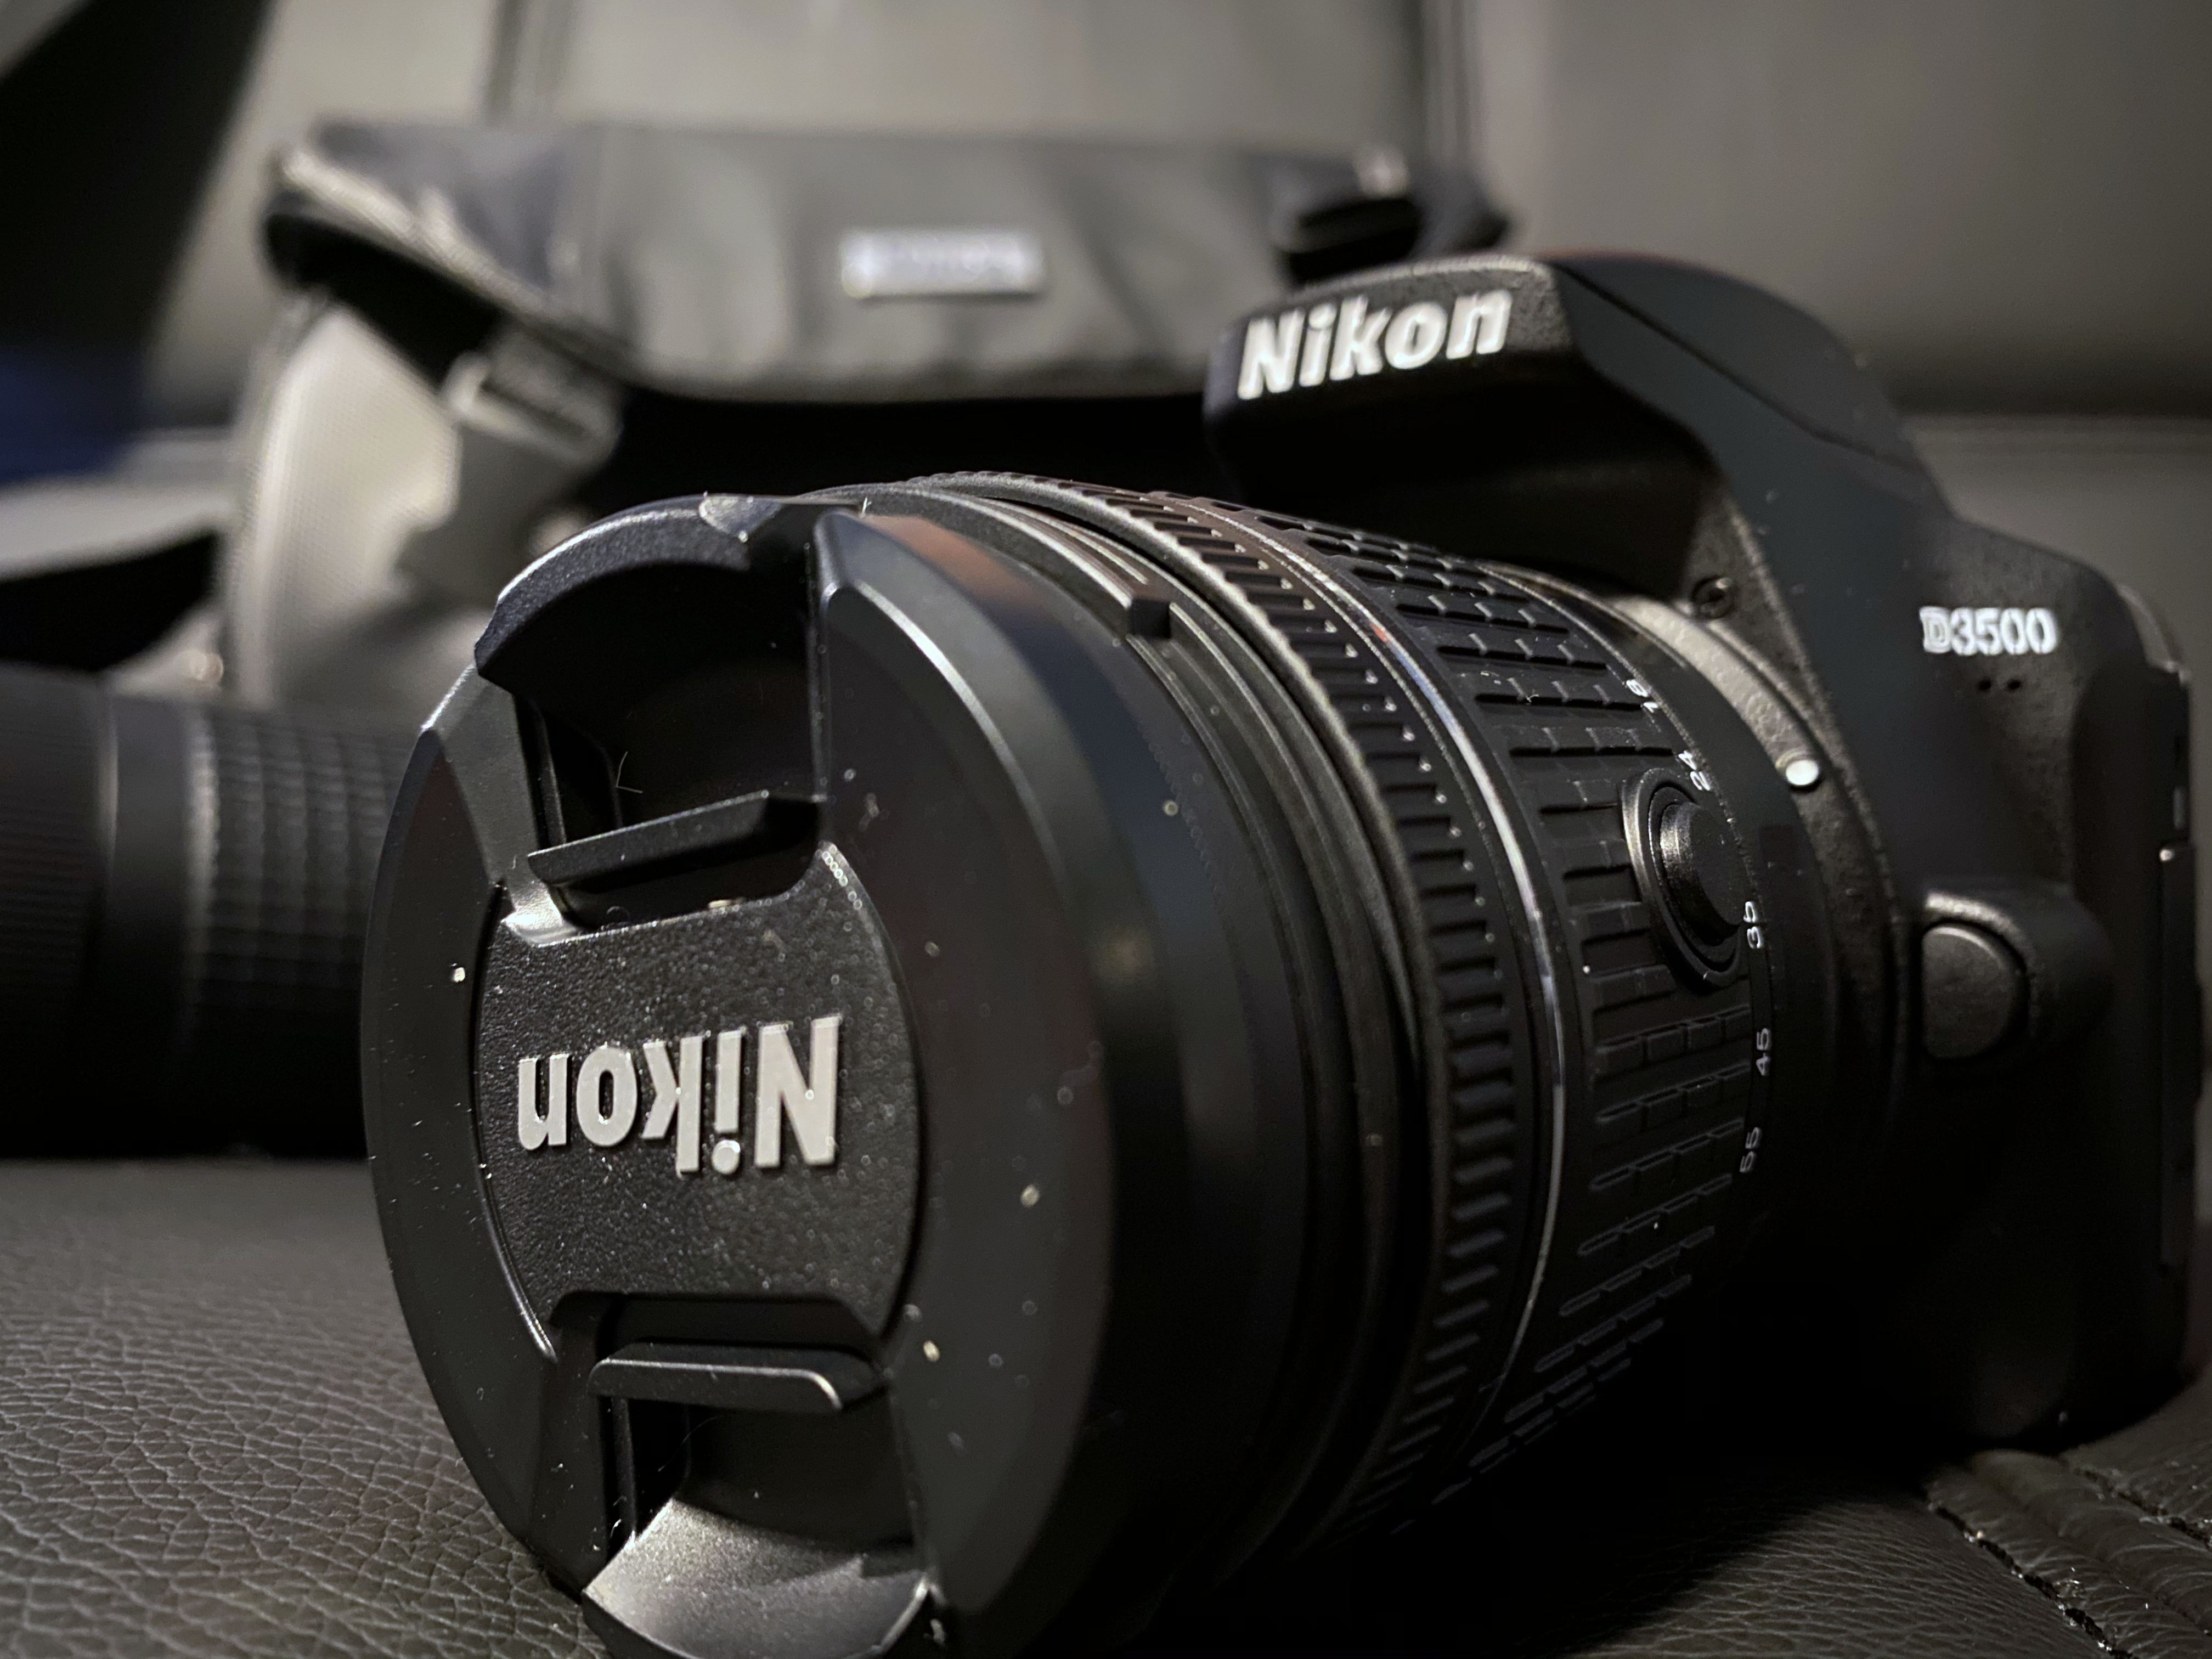 A photo of a Nikon D3500 DSLR Camera.